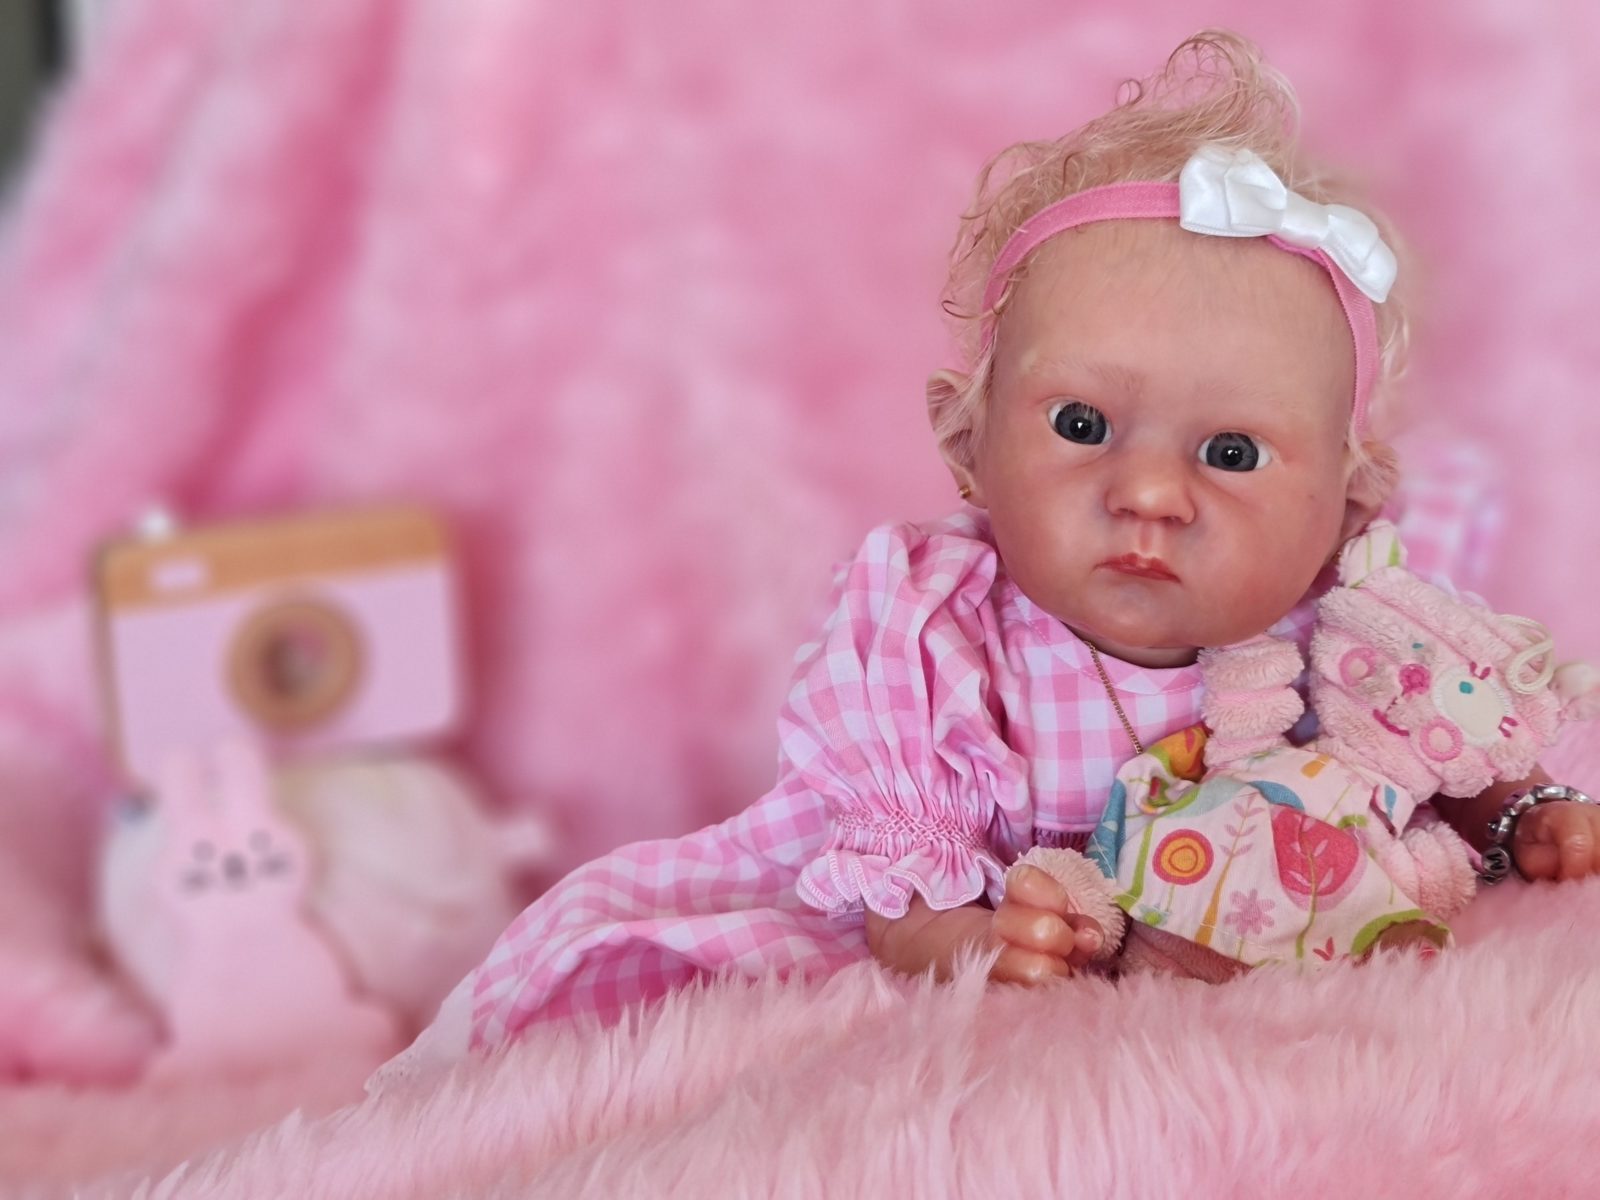 Aussie Reborn Baby Doll Convention Event Bundamba